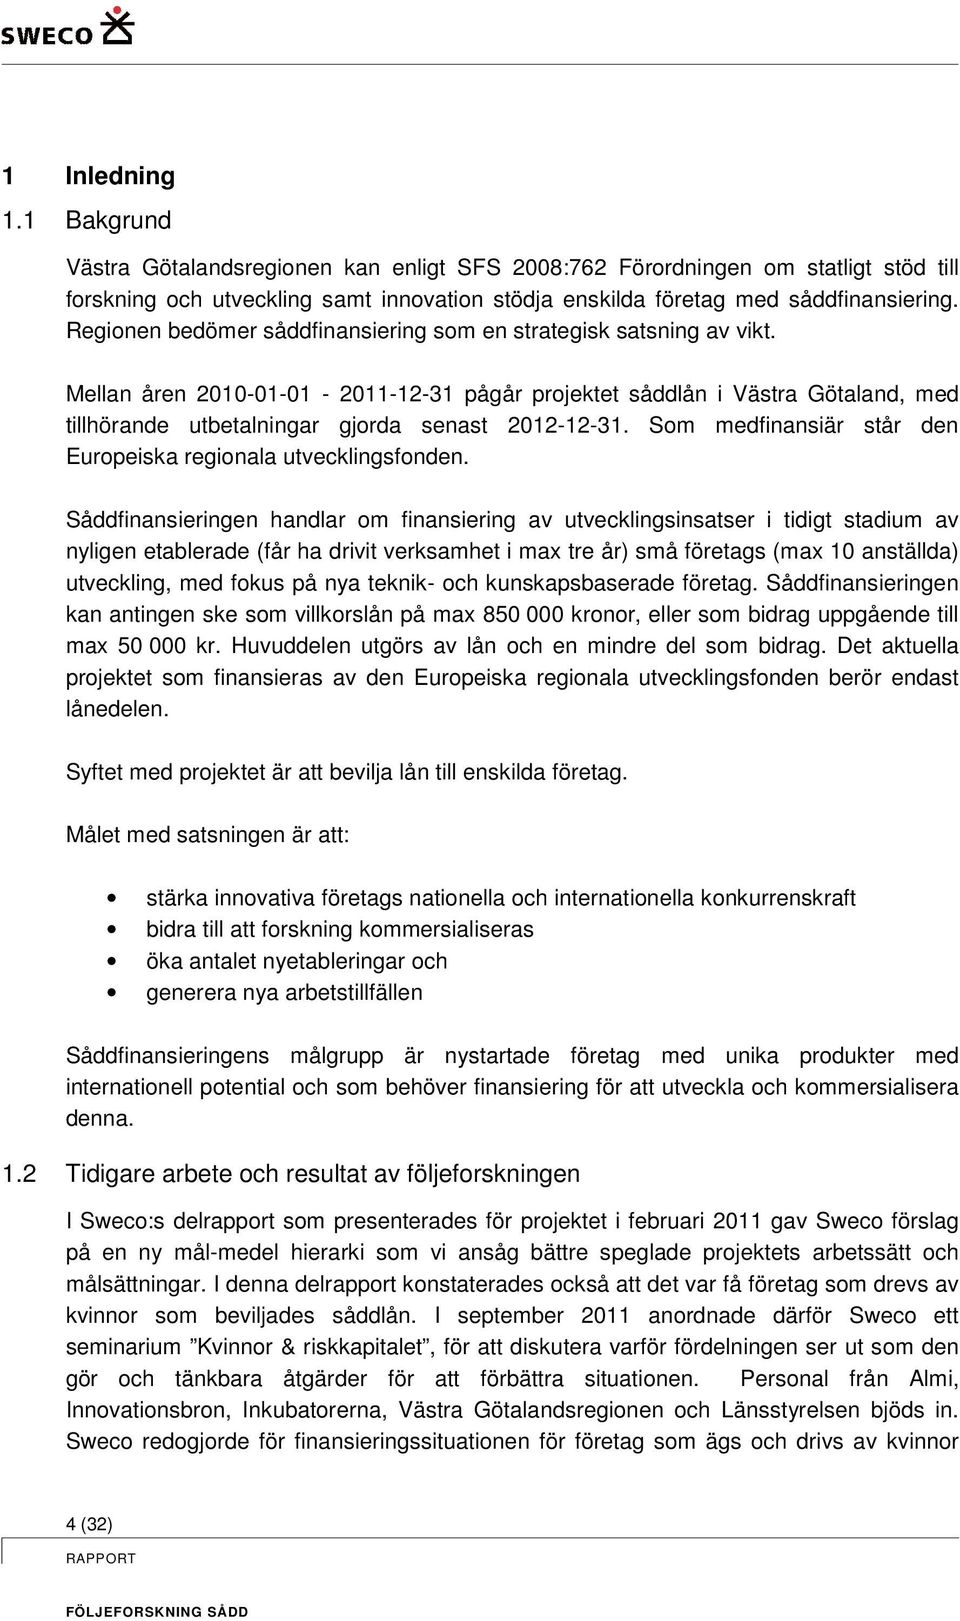 Mellan åren 2010-01-01-2011-12-31 pågår projektet såddlån i Västra Götaland, med tillhörande utbetalningar gjorda senast 2012-12-31. Som medfinansiär står den Europeiska regionala utvecklingsfonden.